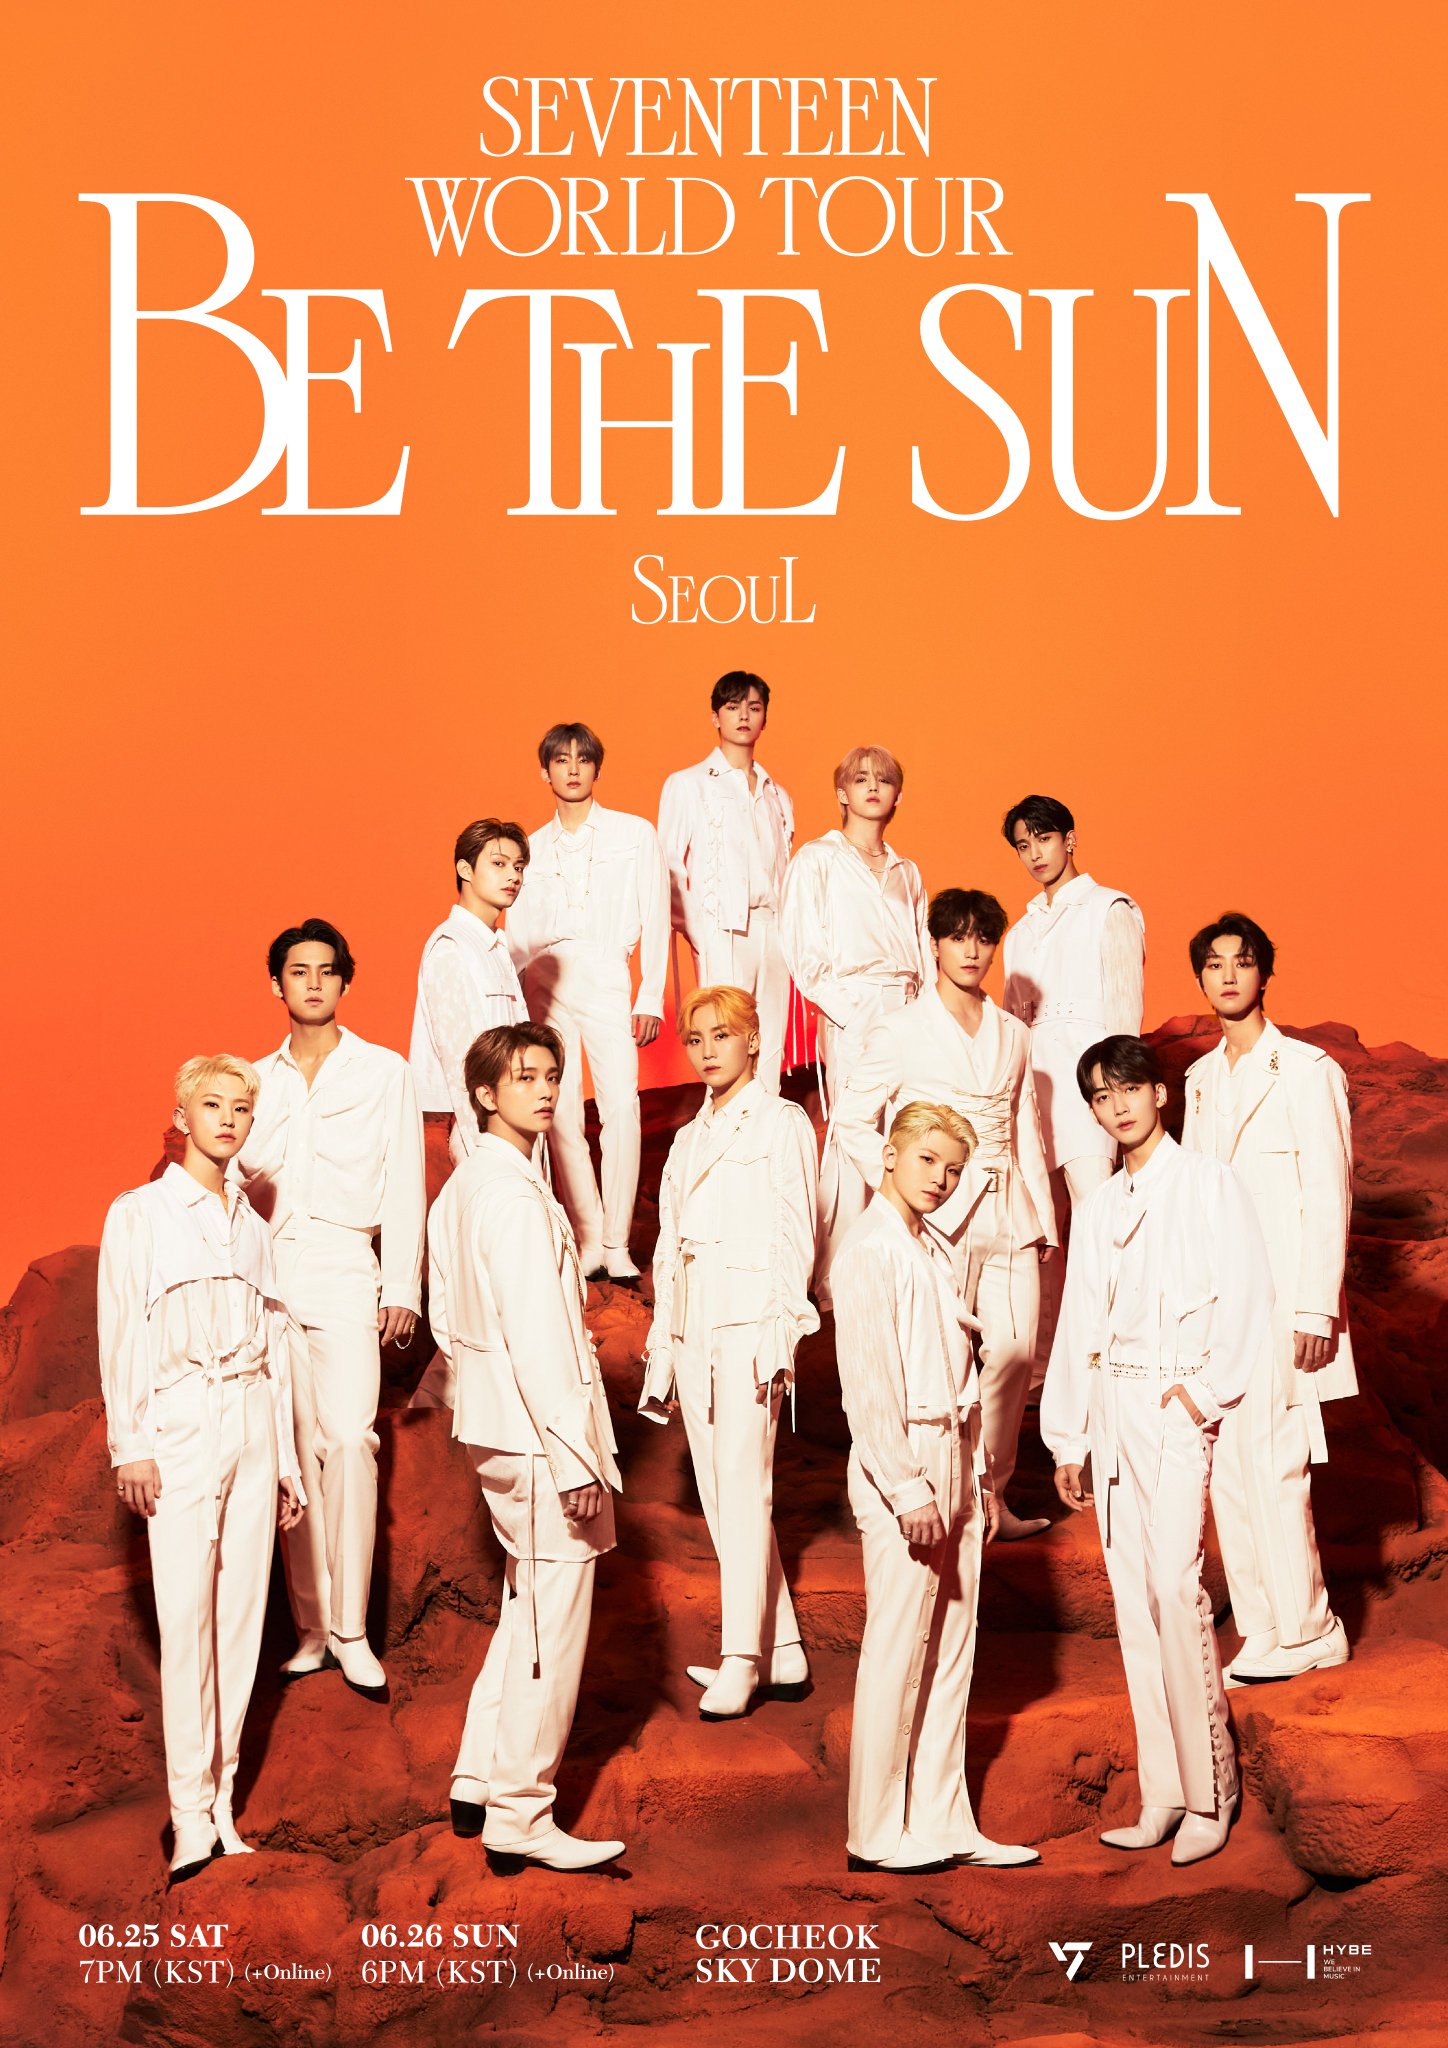 SEVENTEEN WORLD TOUR 'BE THE SUN' | Seventeen Wiki | Fandom